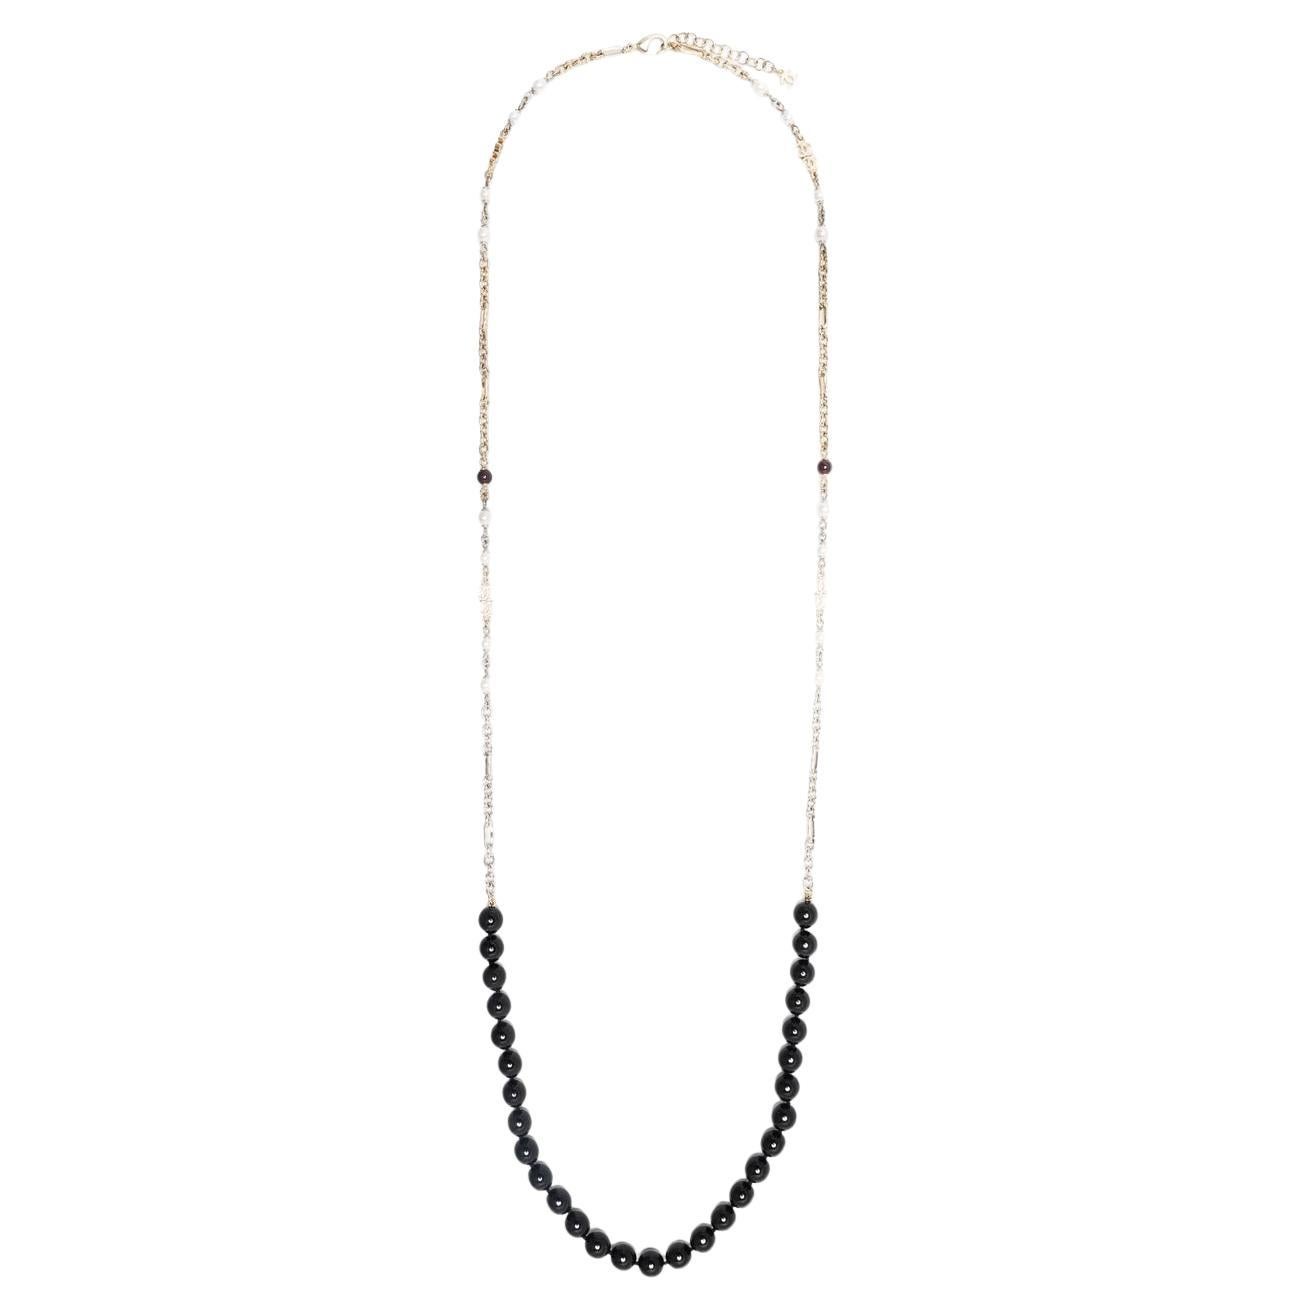 Chanel, collier long orné de perles noires, 2021